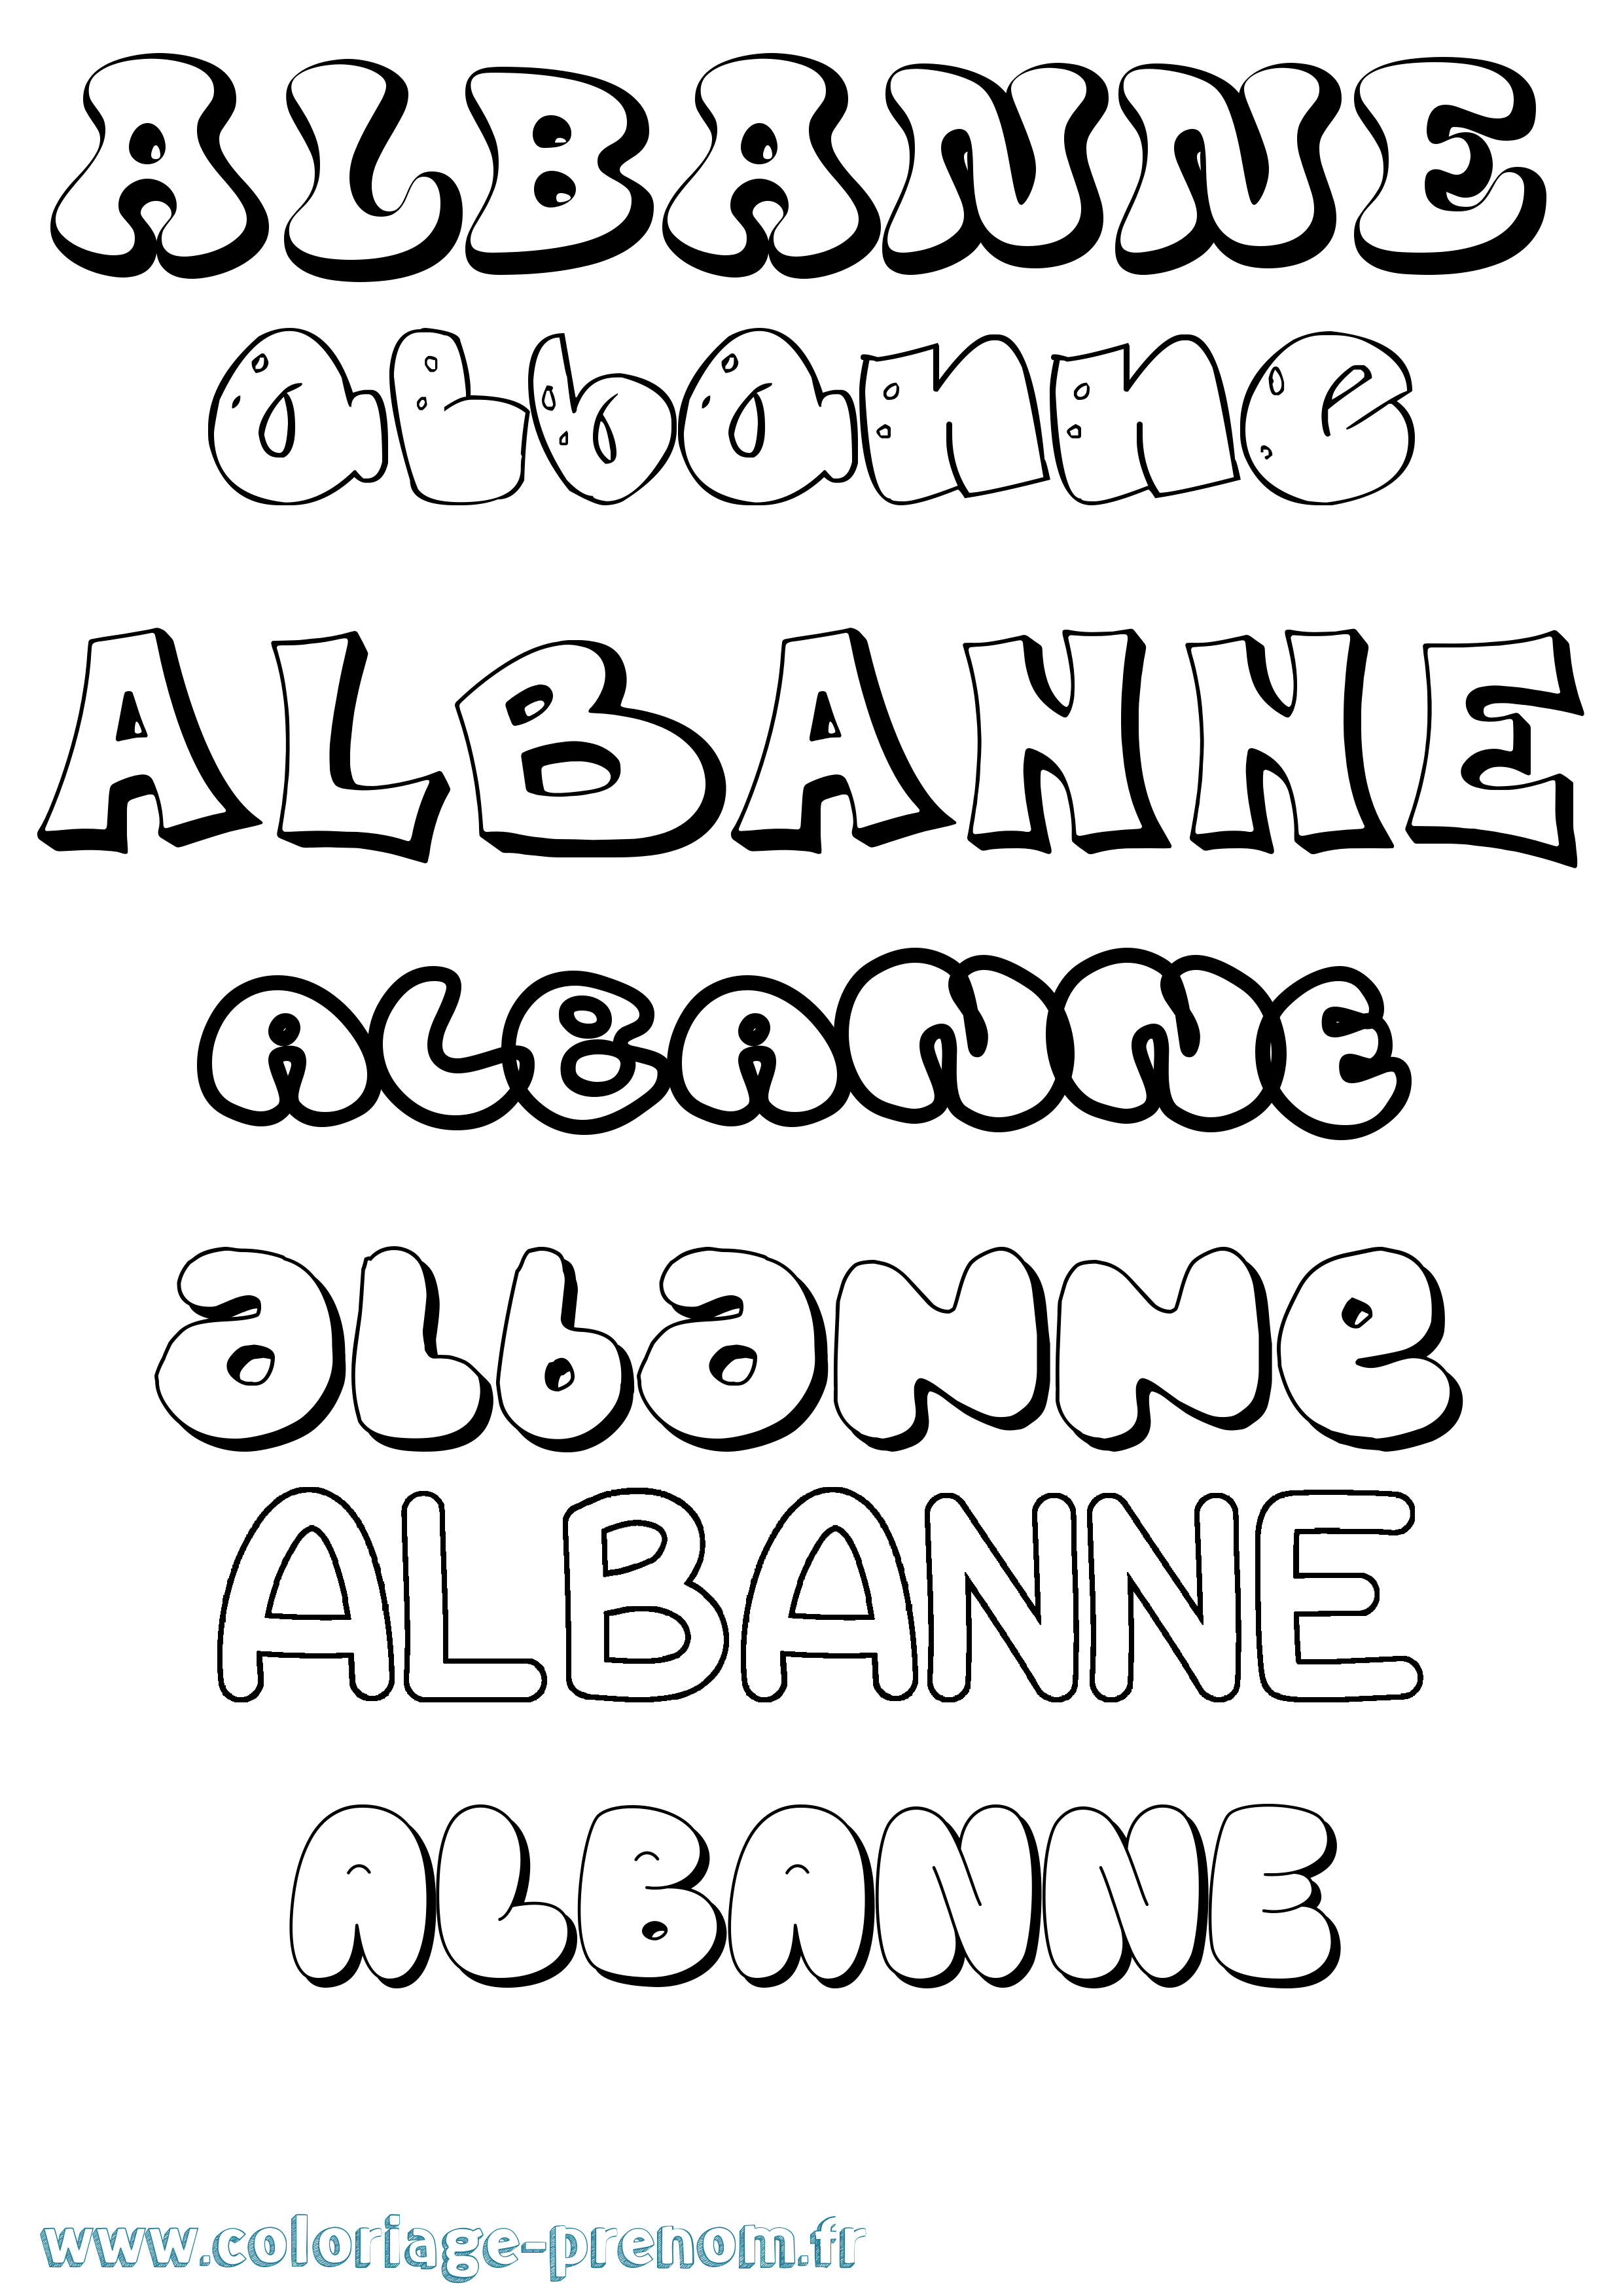 Coloriage prénom Albanne Bubble